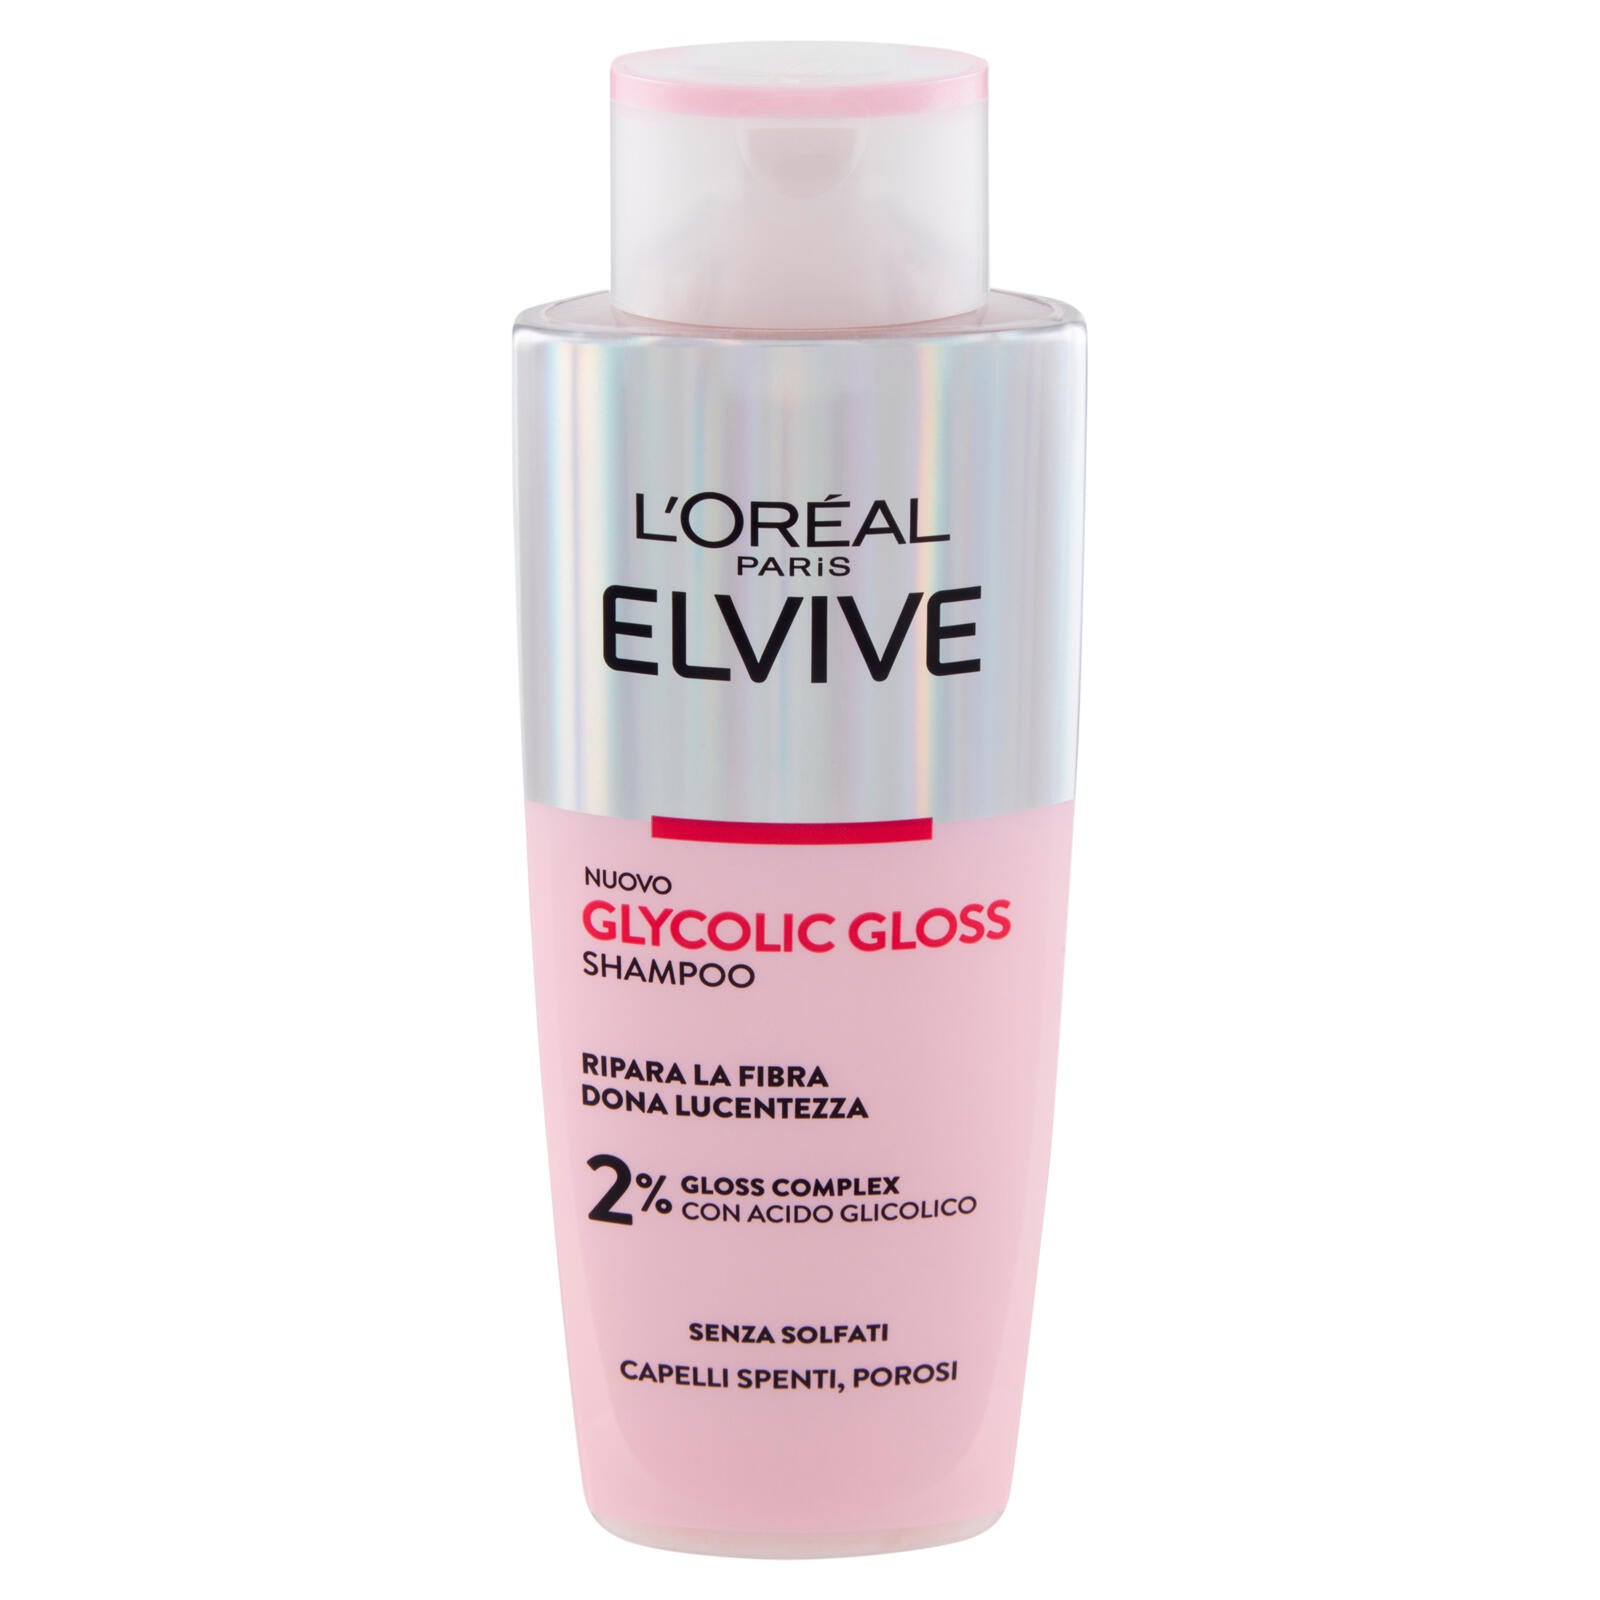 L'Oréal Paris Elvive Glycolic Gloss Shampoo con Acido Glicolico Per Capelli Spenti e Porosi 200 ml